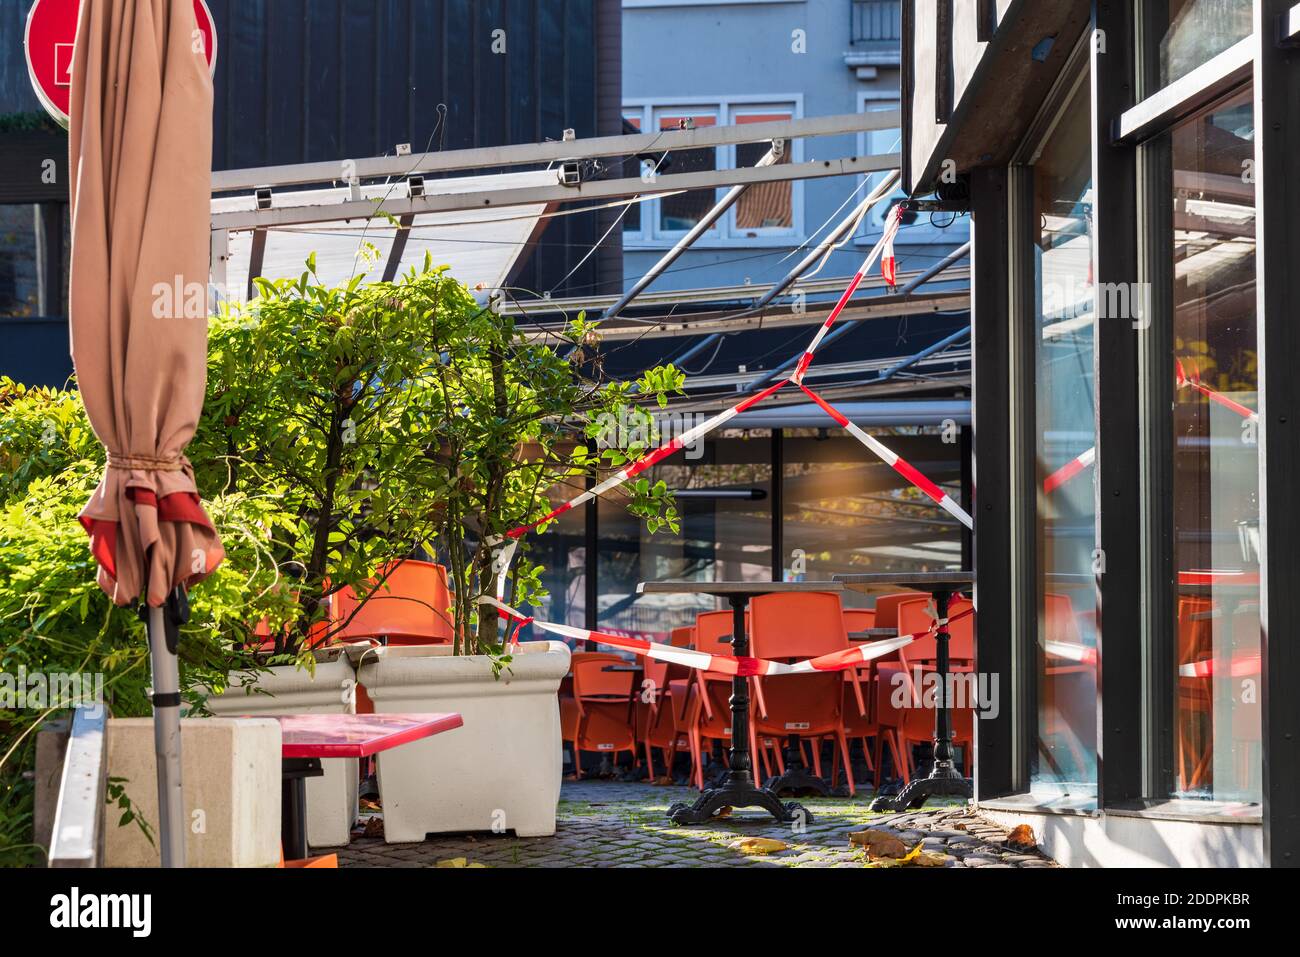 Der Alte Markt in Kiel in gastronomischer Hotspot, während des Corona-lockdown menschenleer Foto Stock